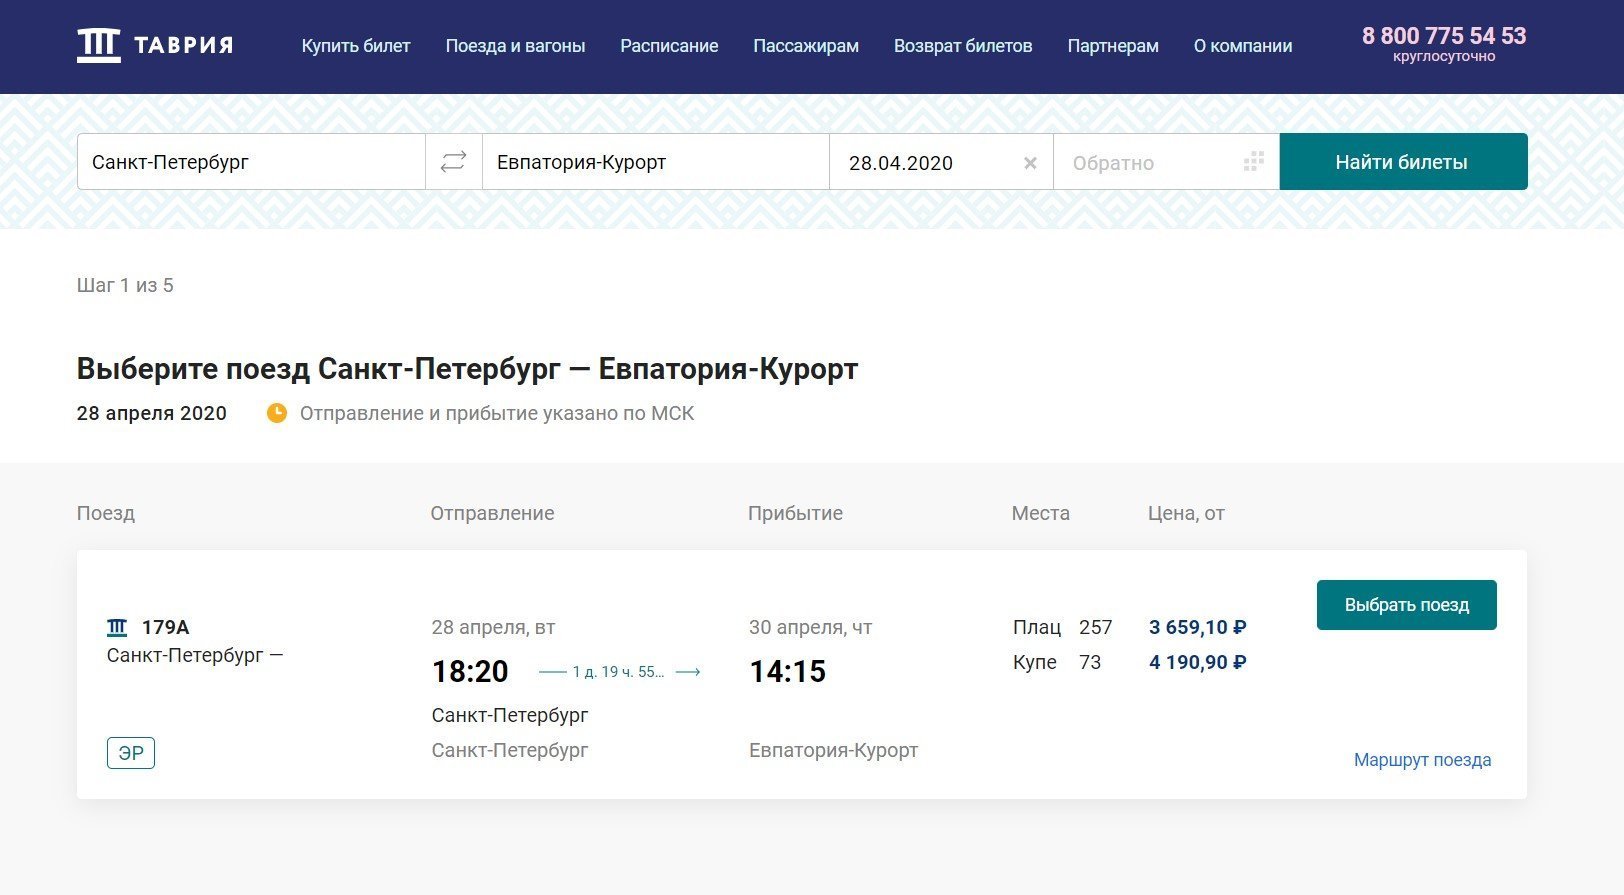 Продажа билетов на поезд Санкт-Петербург - Евпатория